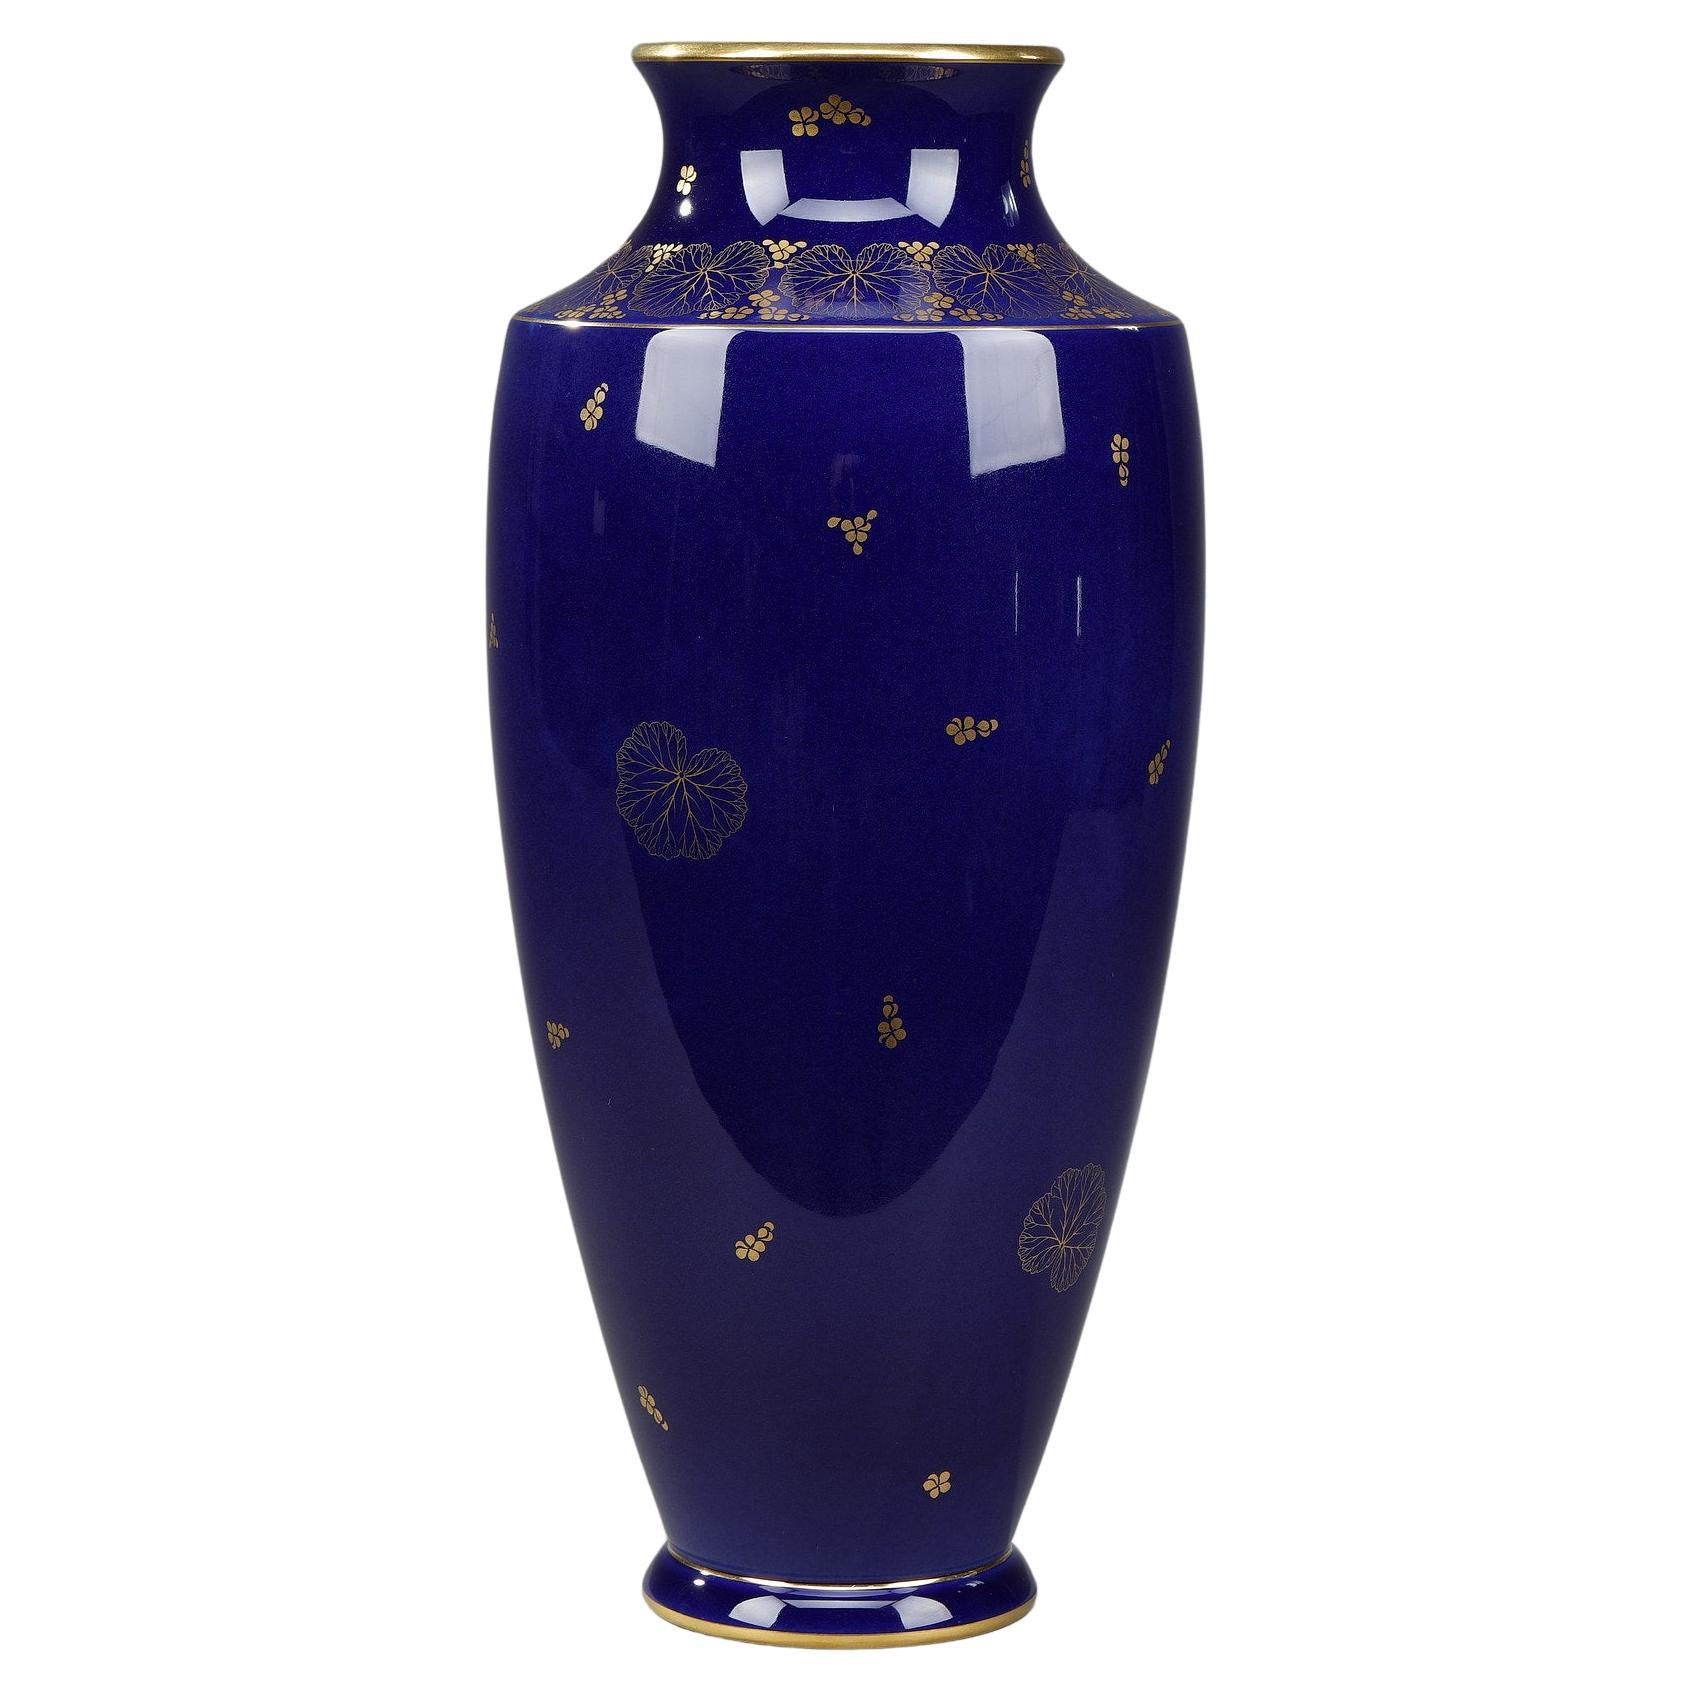 Vase Frome the Manufacture de Sèvres with Geranium Decoration